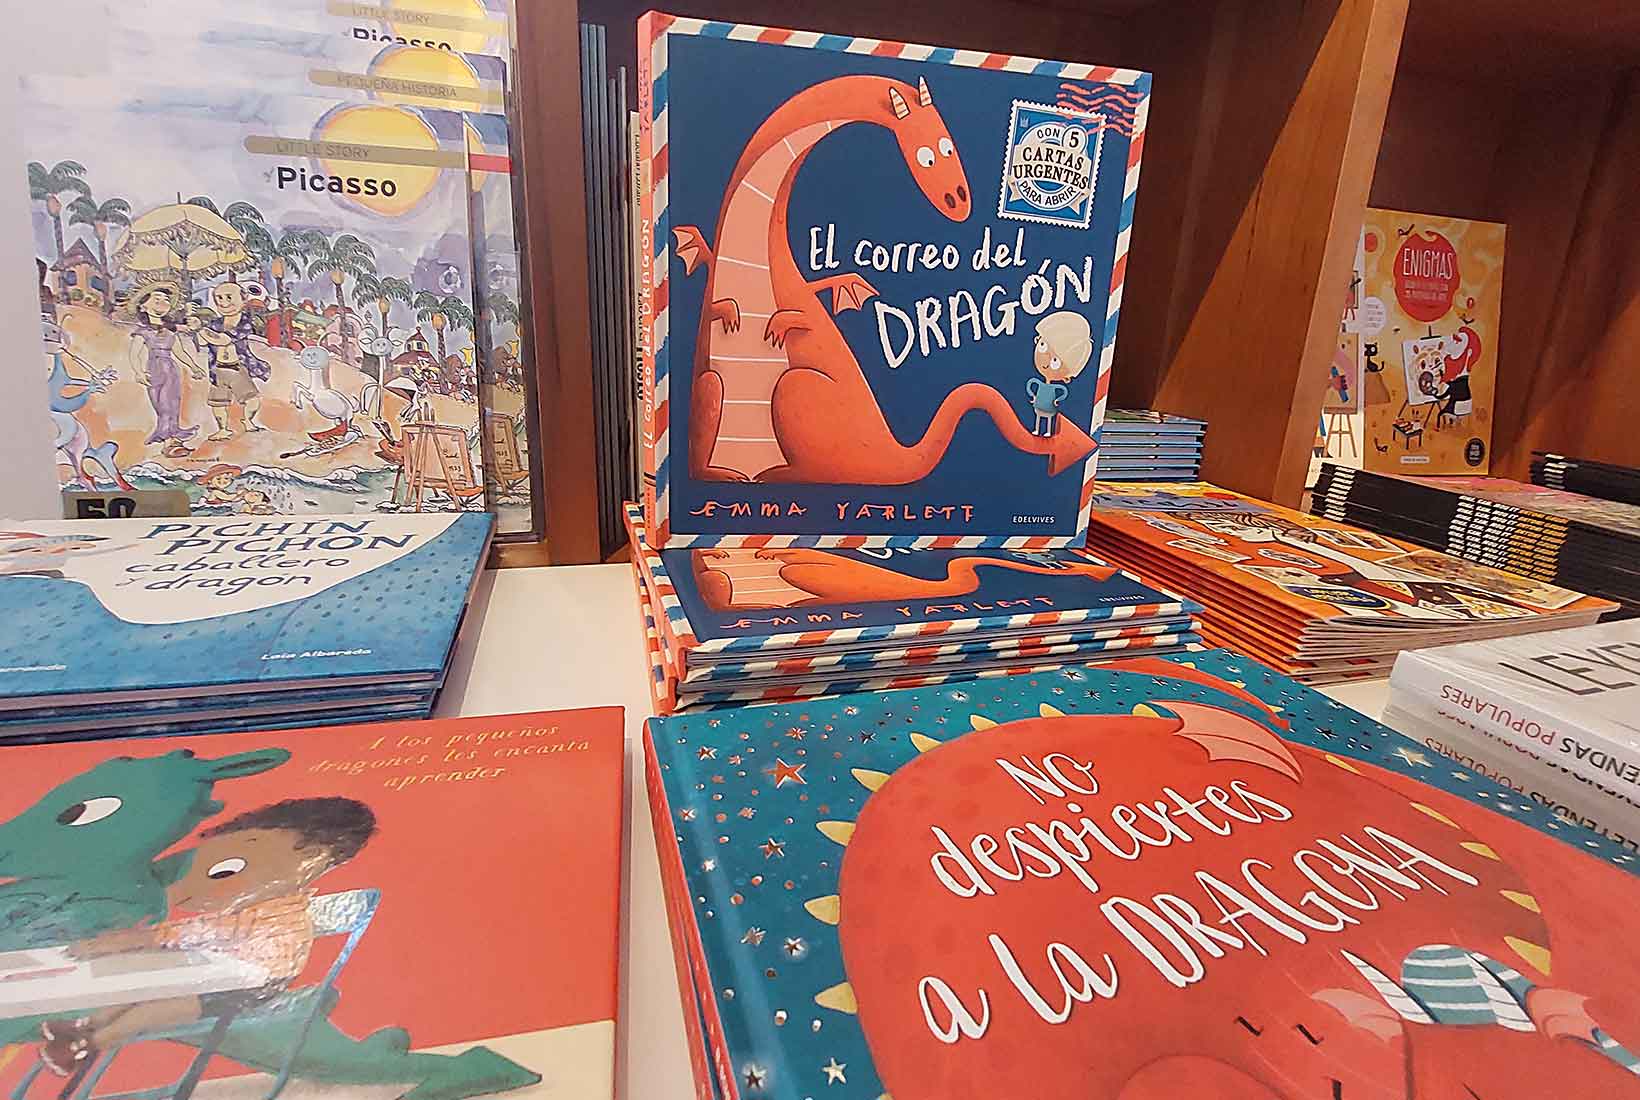 Libros sobre dragones en la tienda del museo Casa Botines